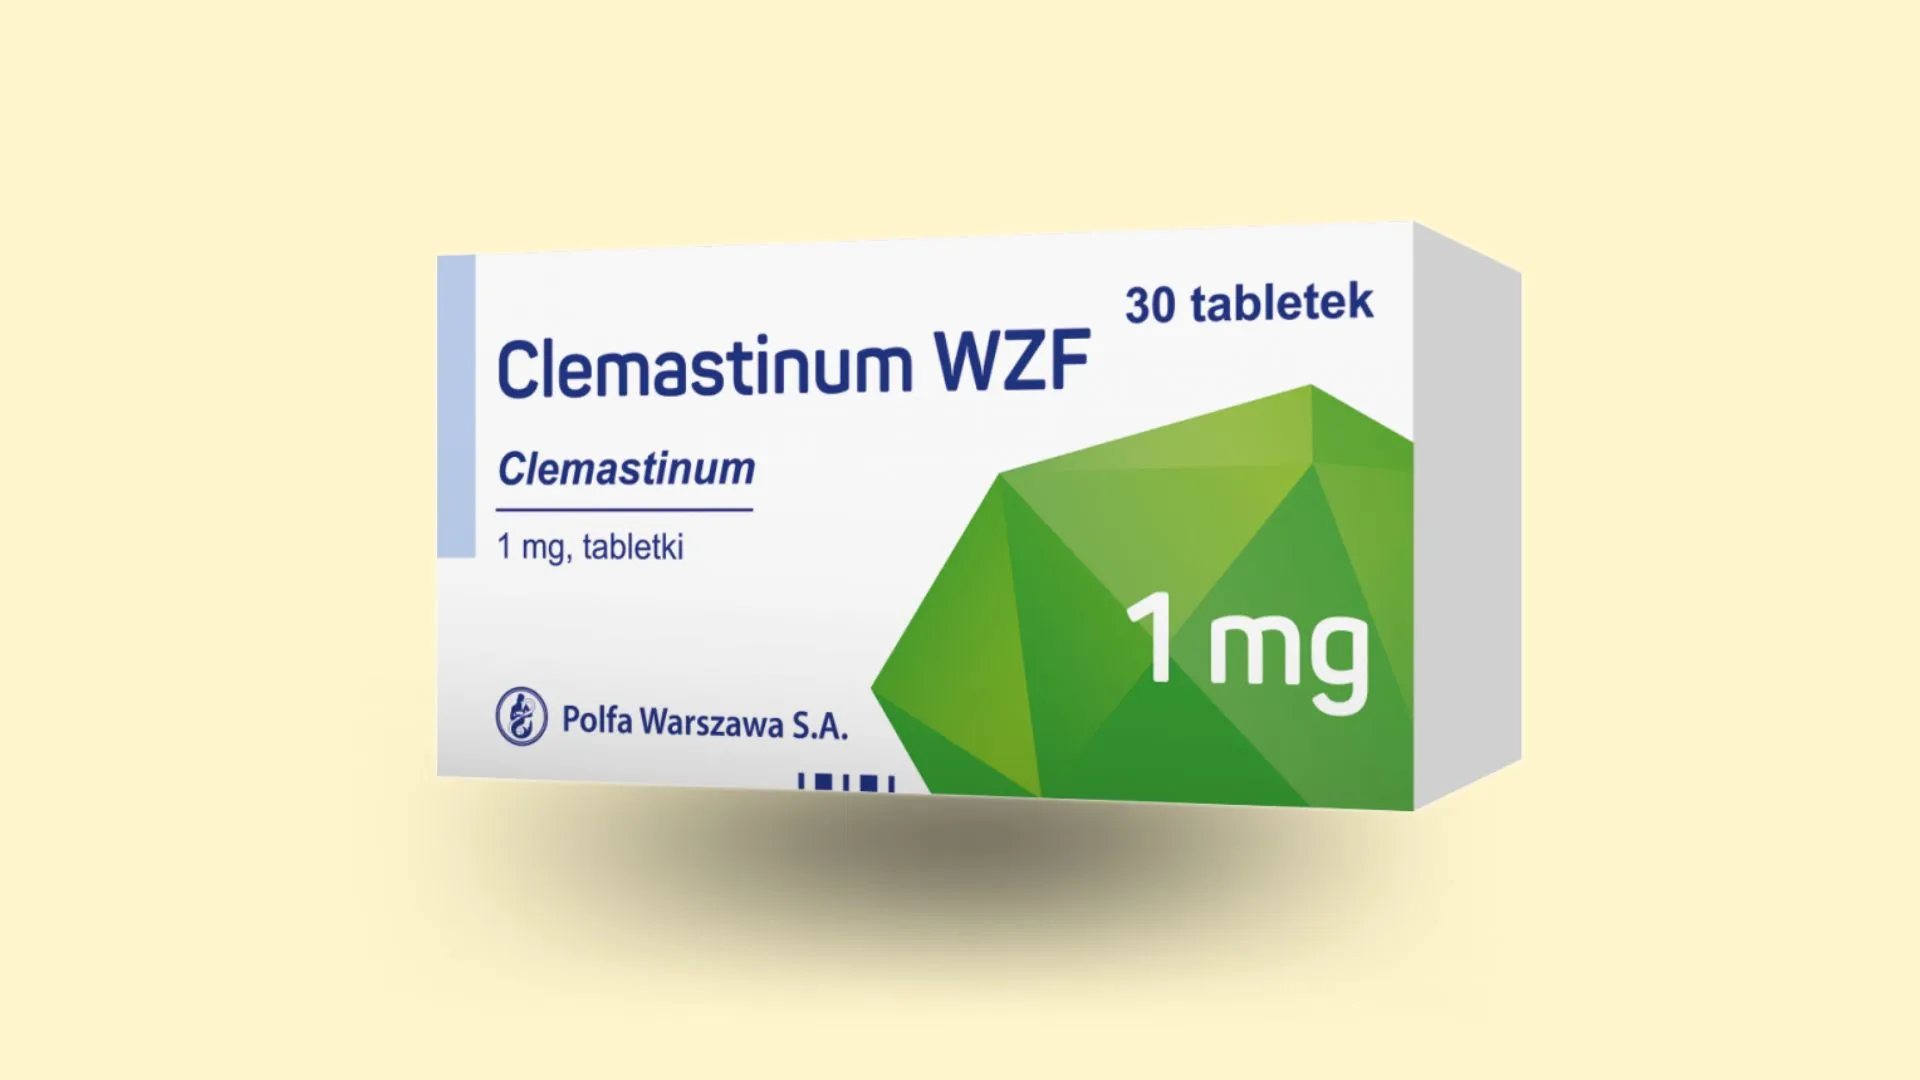 Clemastinum - Recepta online - e-Recepta z konsultacją | cena, dawkowanie, przeciwwskazania